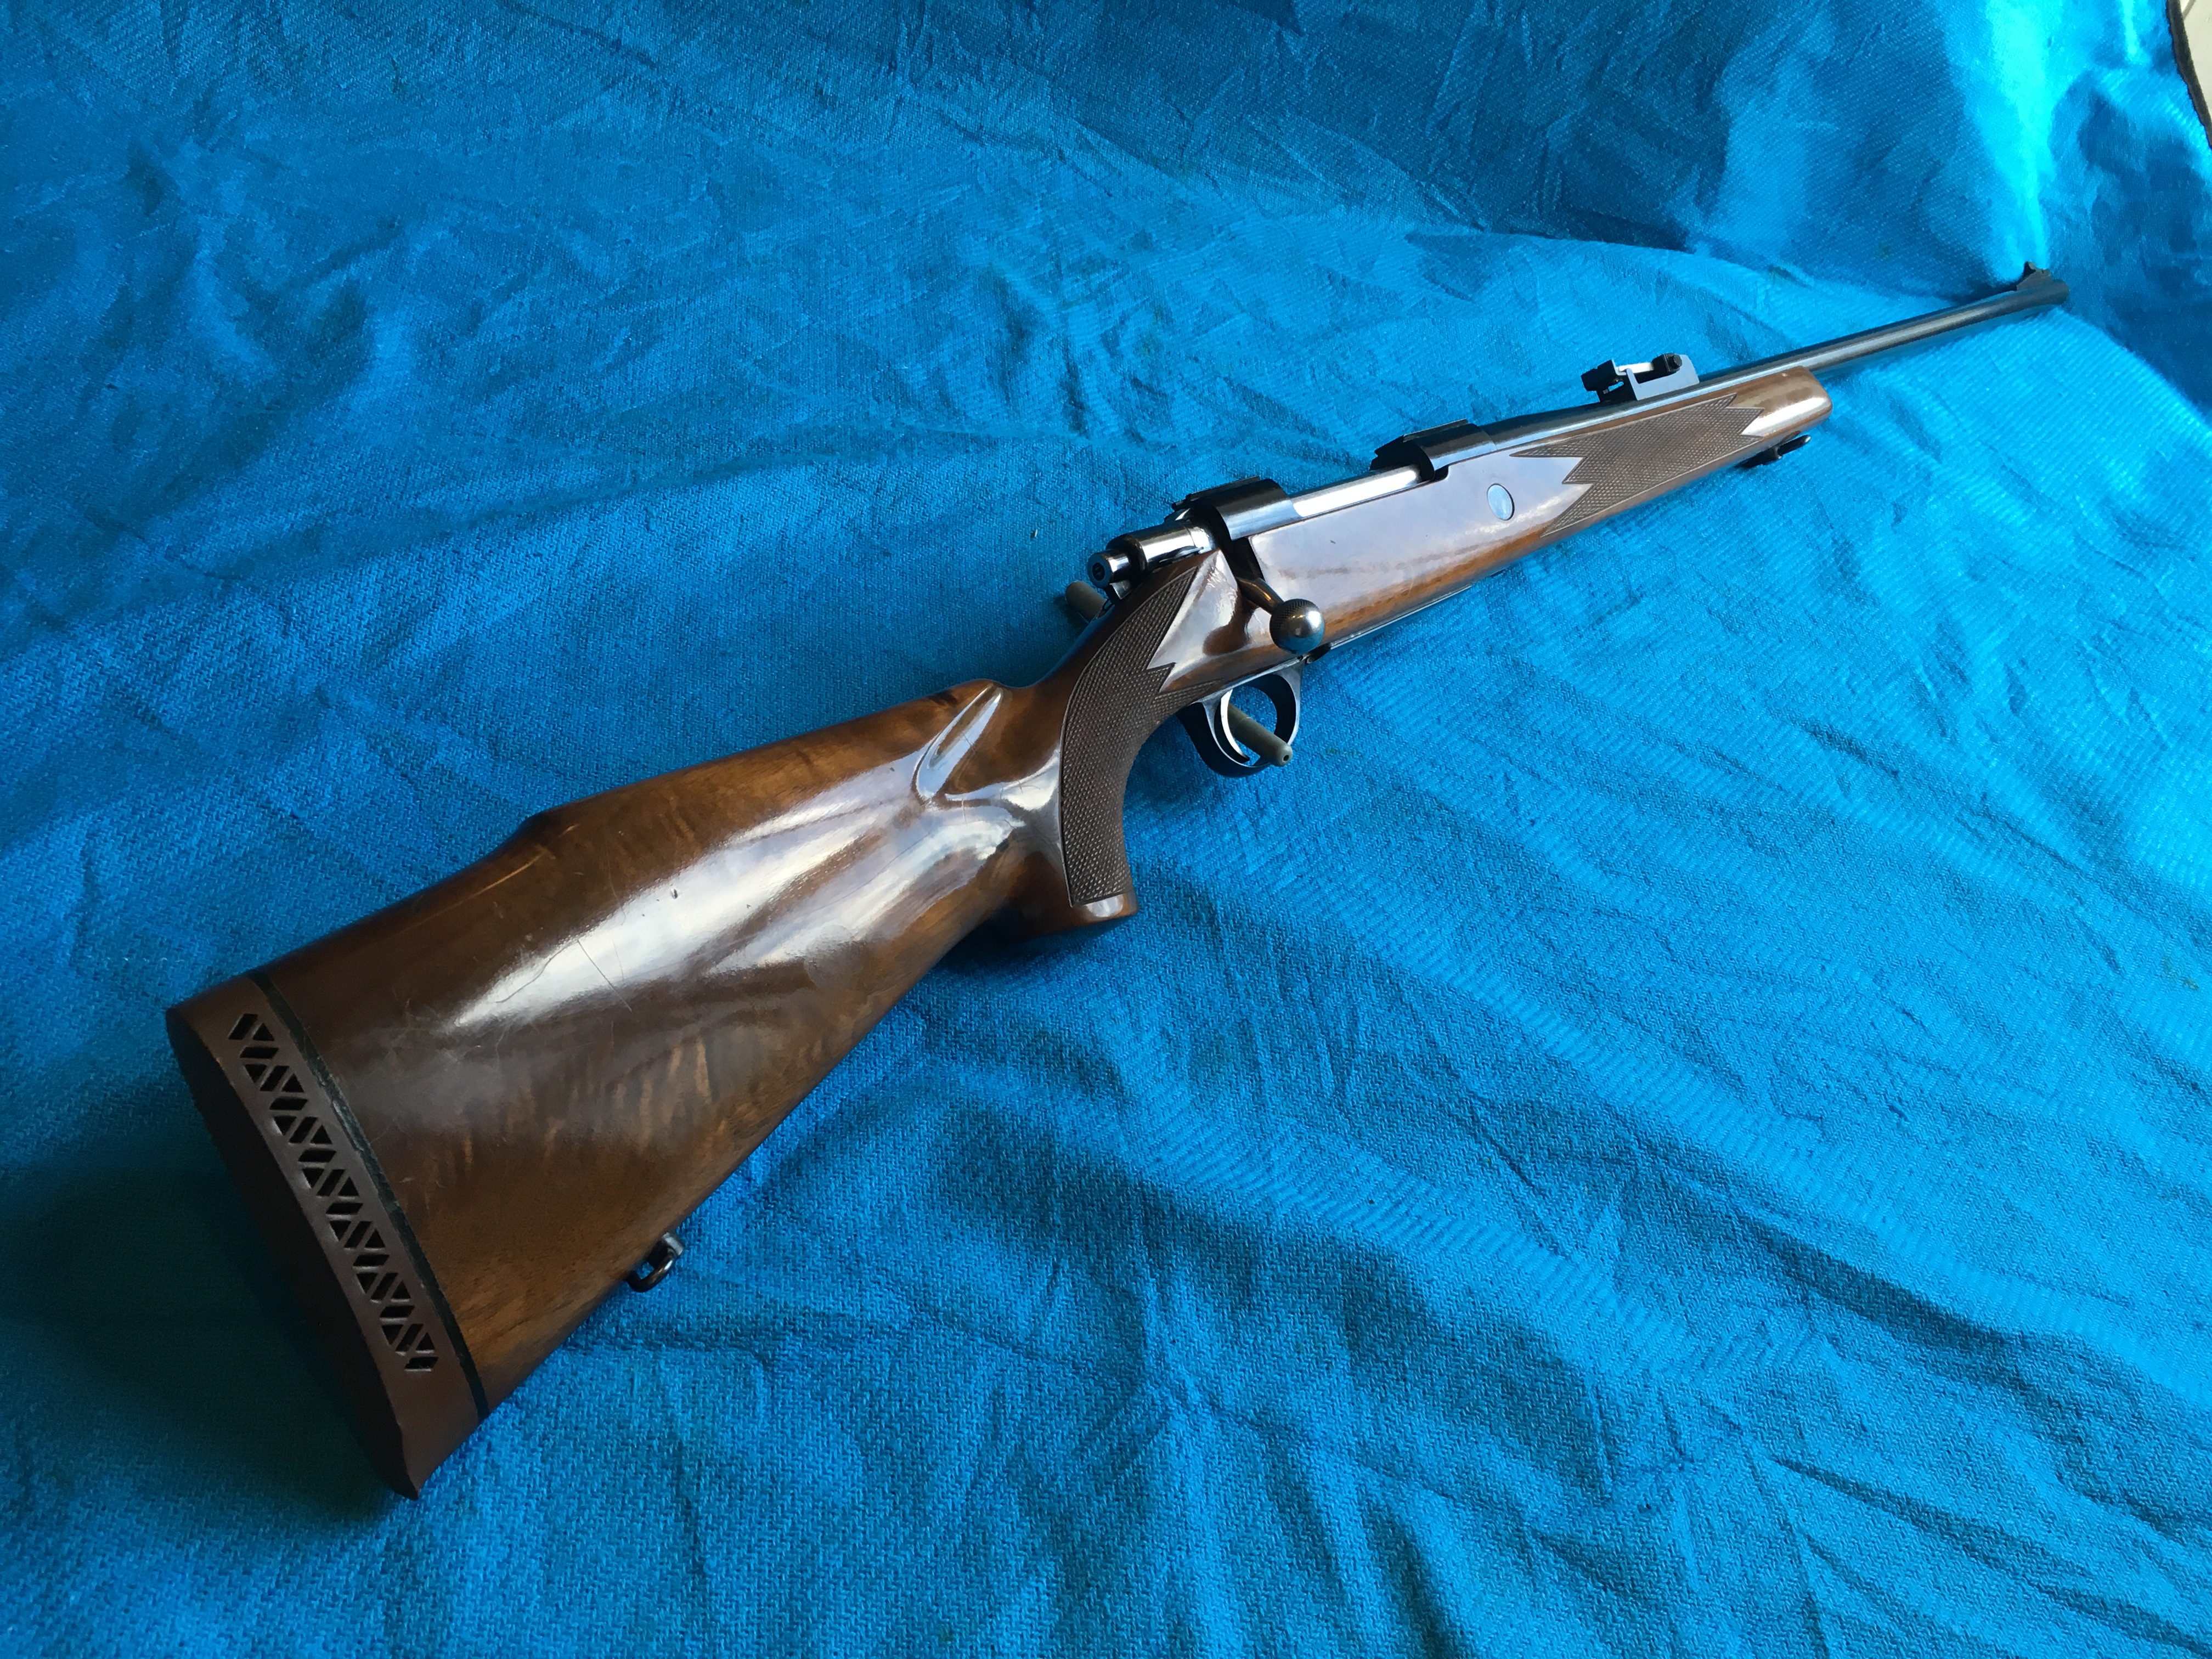 sako finnbear rifle stocks for sale